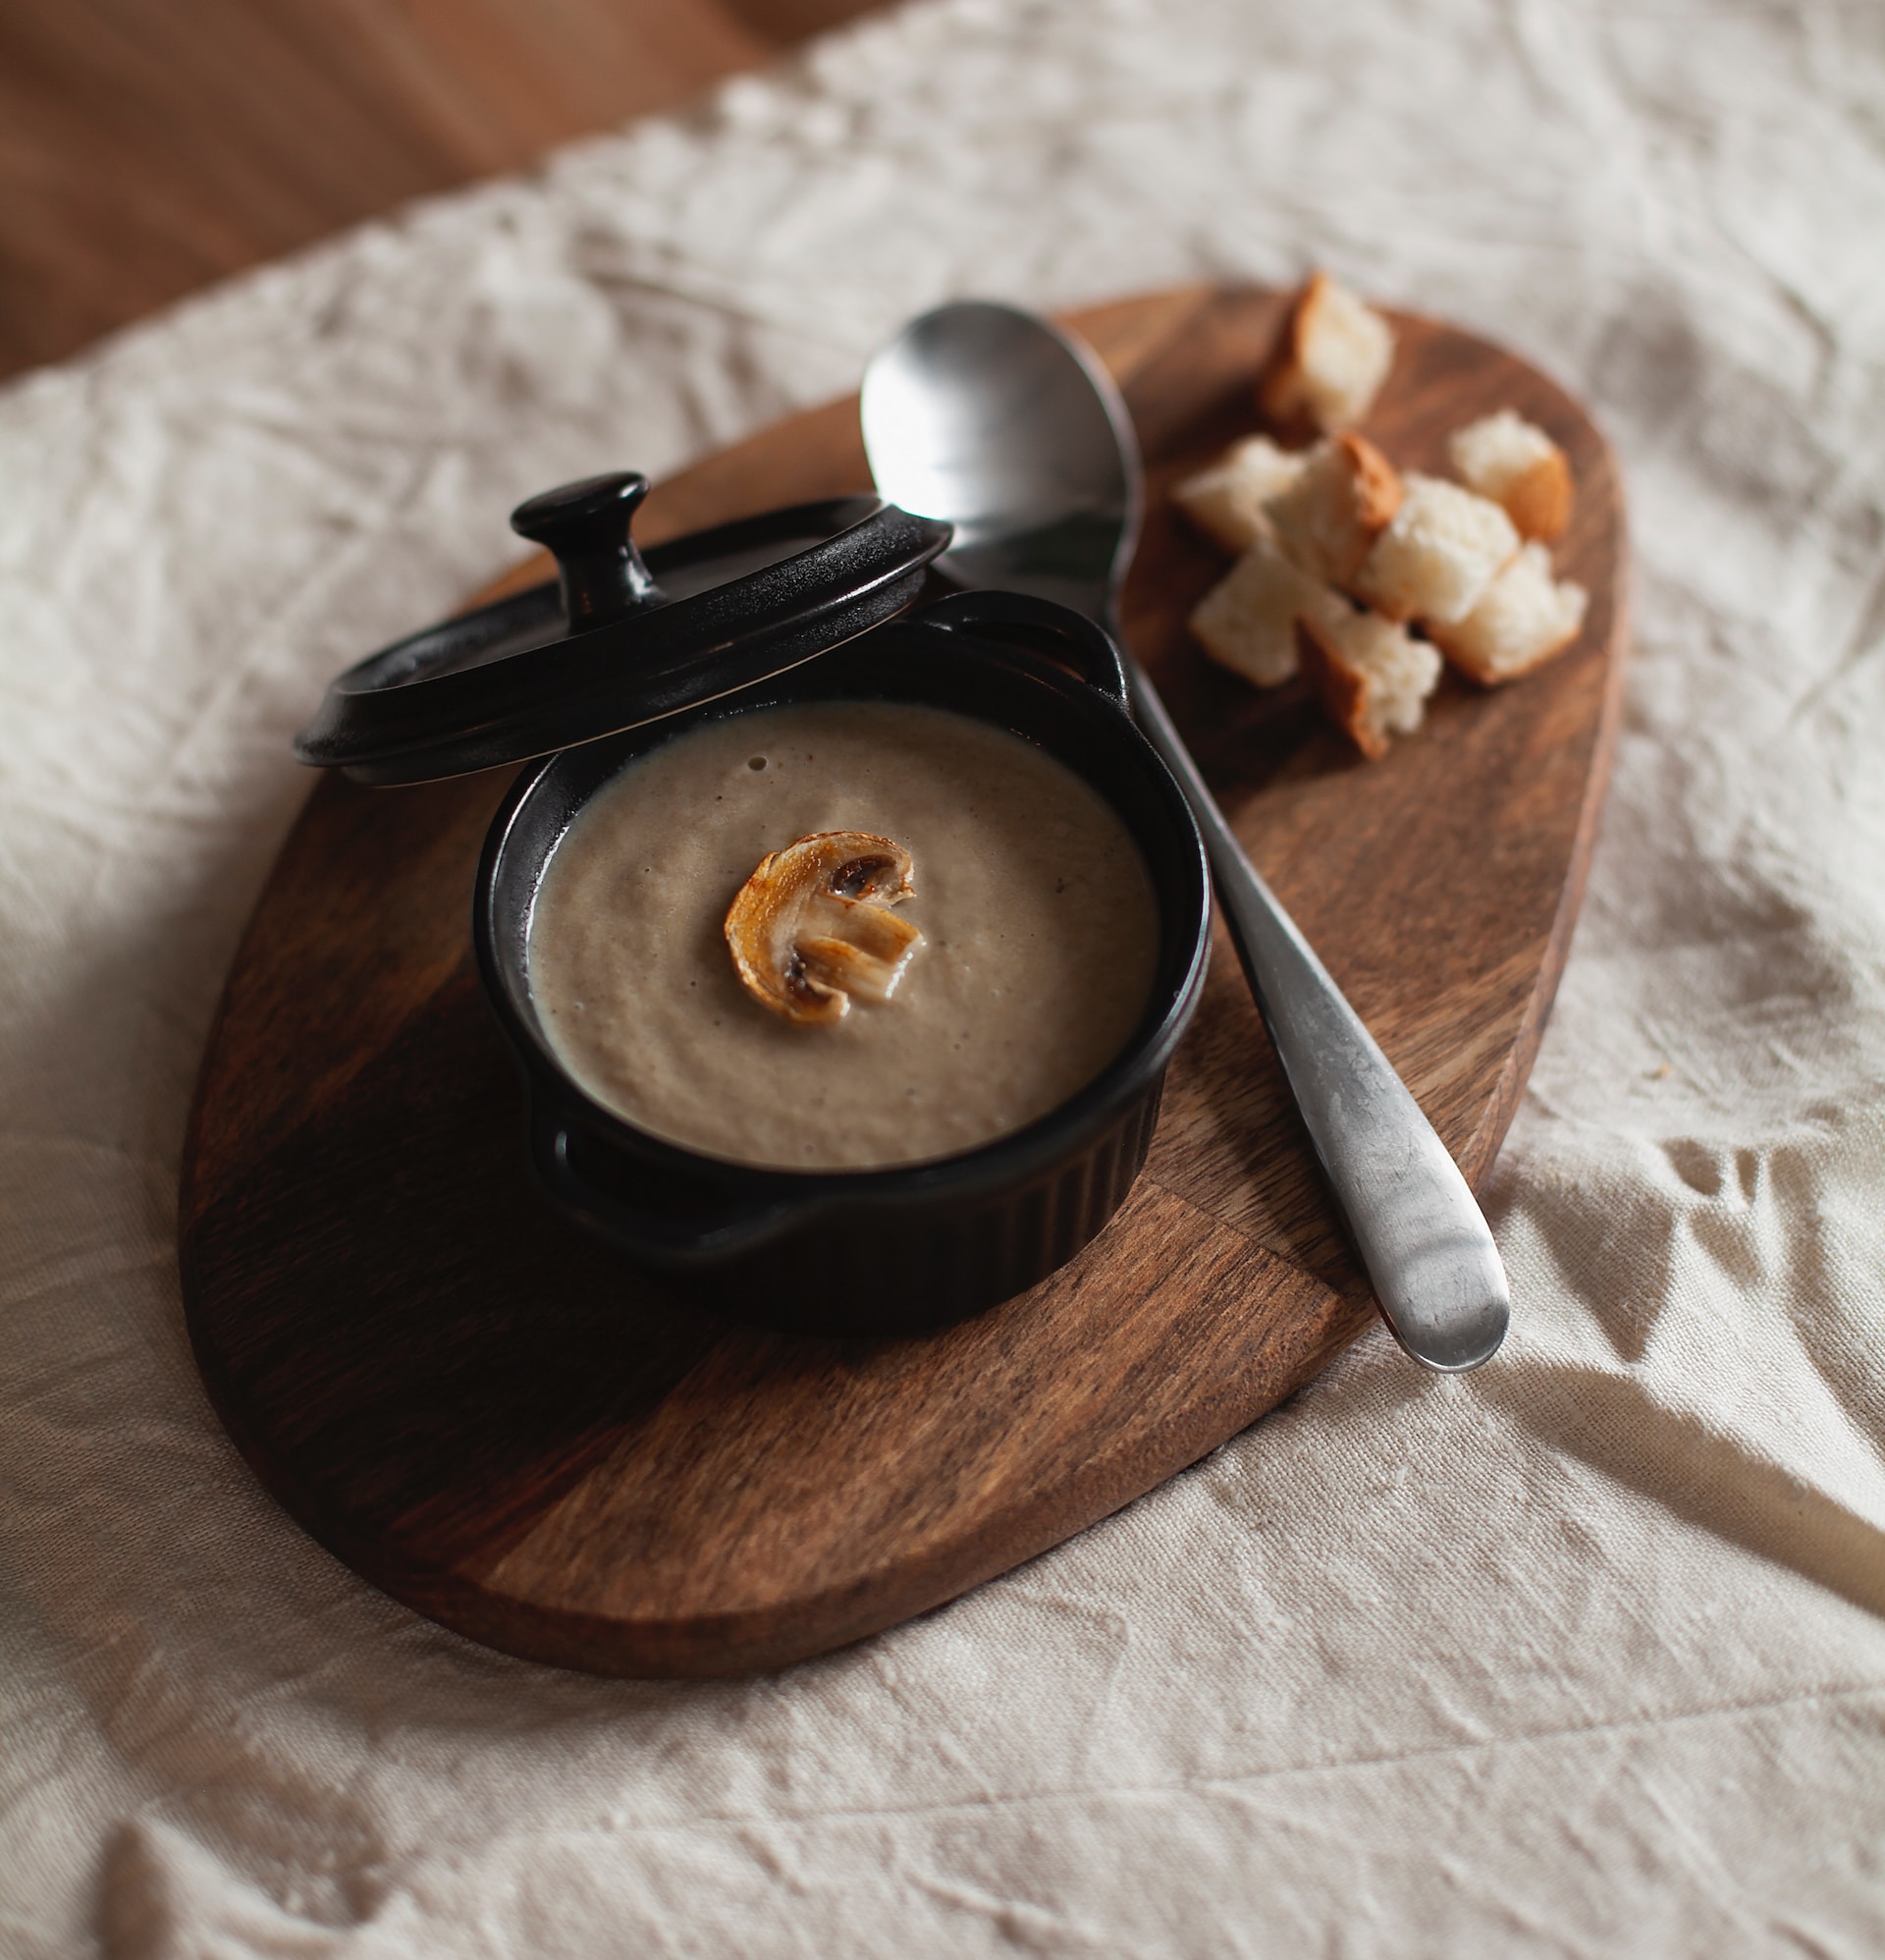 Η μανιταρόσουπα αποτελεί αγαπημένη εναλλακτική των vegan για τη μαγειρίτσα, Photo: Dmitry Kovalchuk/Unsplash